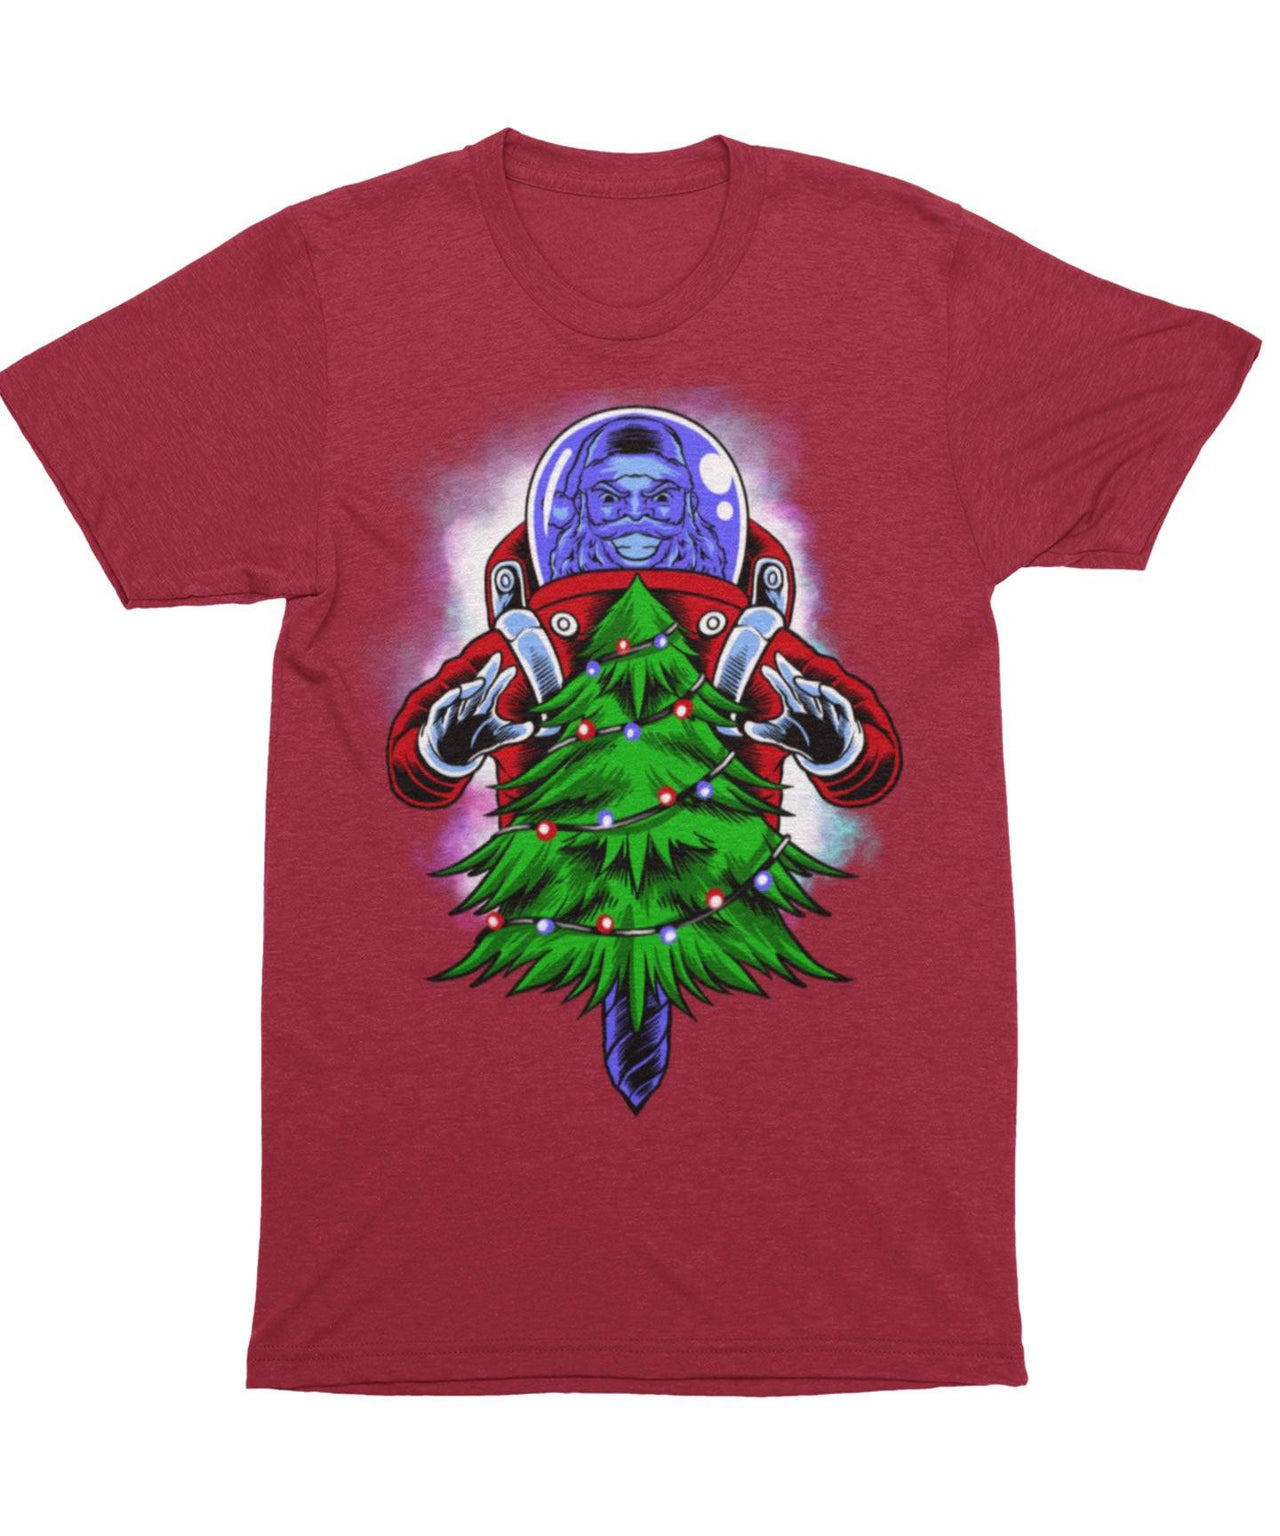 End Of light, Unisex Christmas Graphic T-Shirt For Men 8Ball